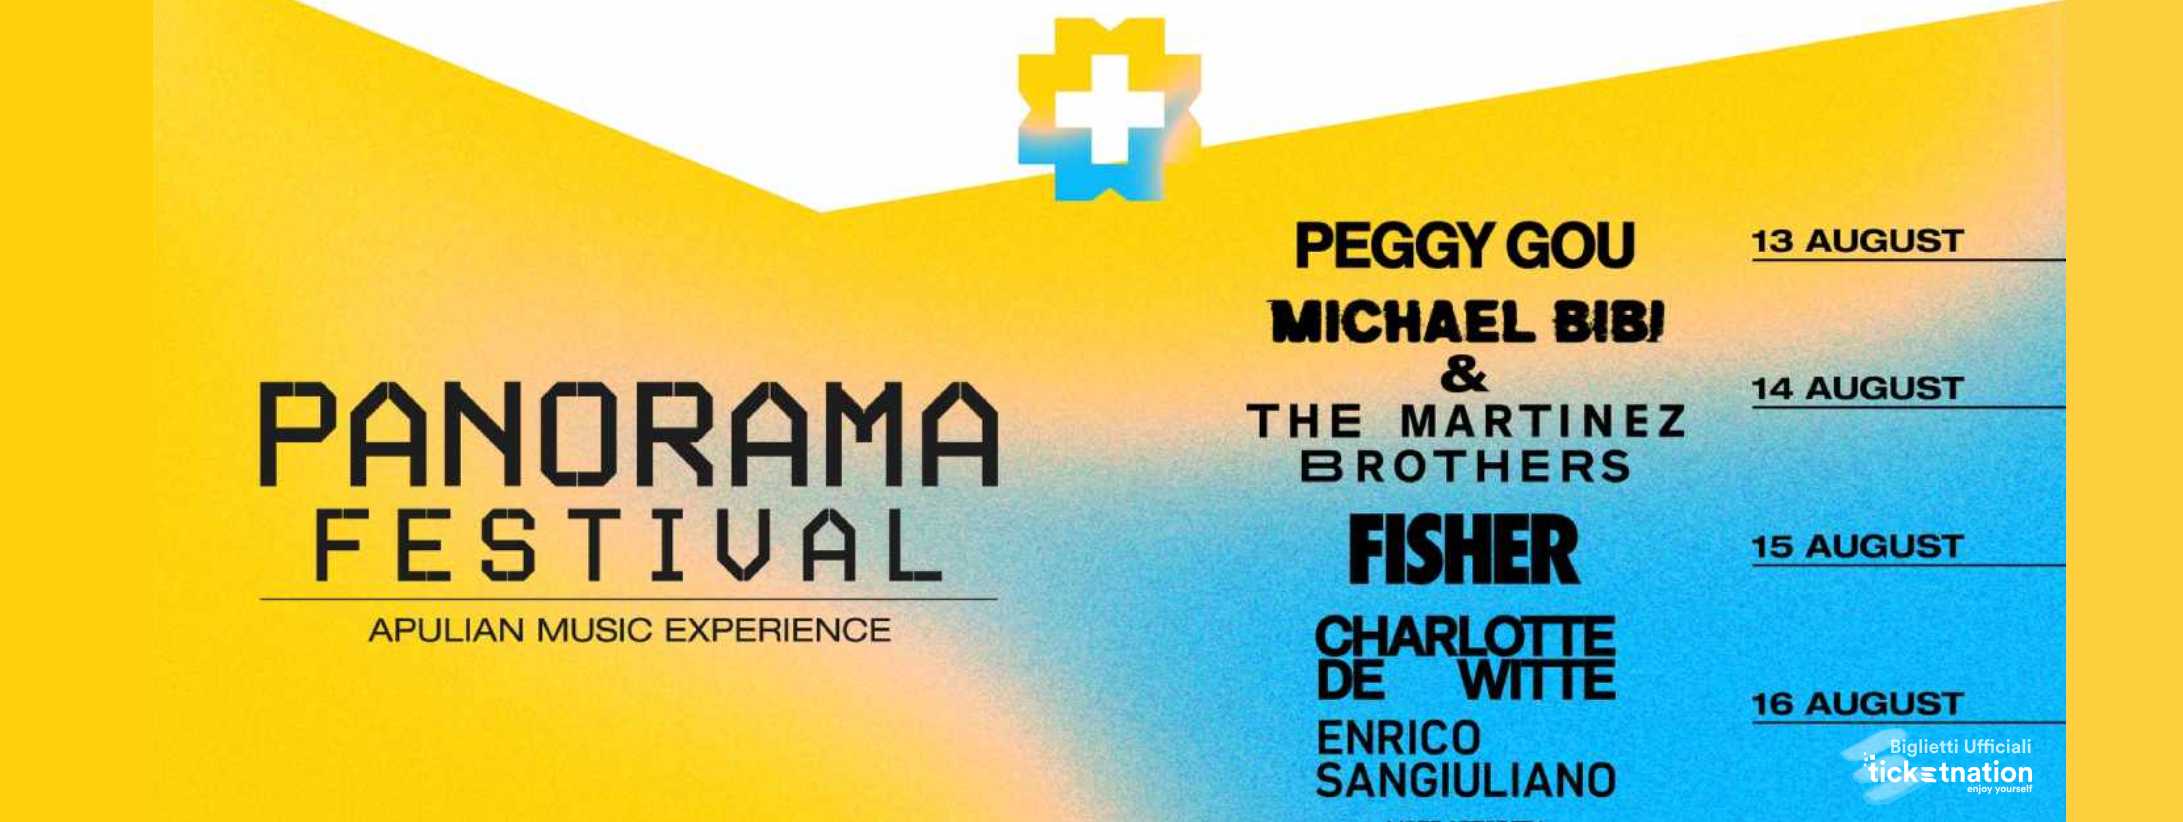 Panorama Festival @ Salento Arena 13 - 16 Agosto 2022 – Ticket - Biglietti  – Pacchetti Hotel • Event Destination